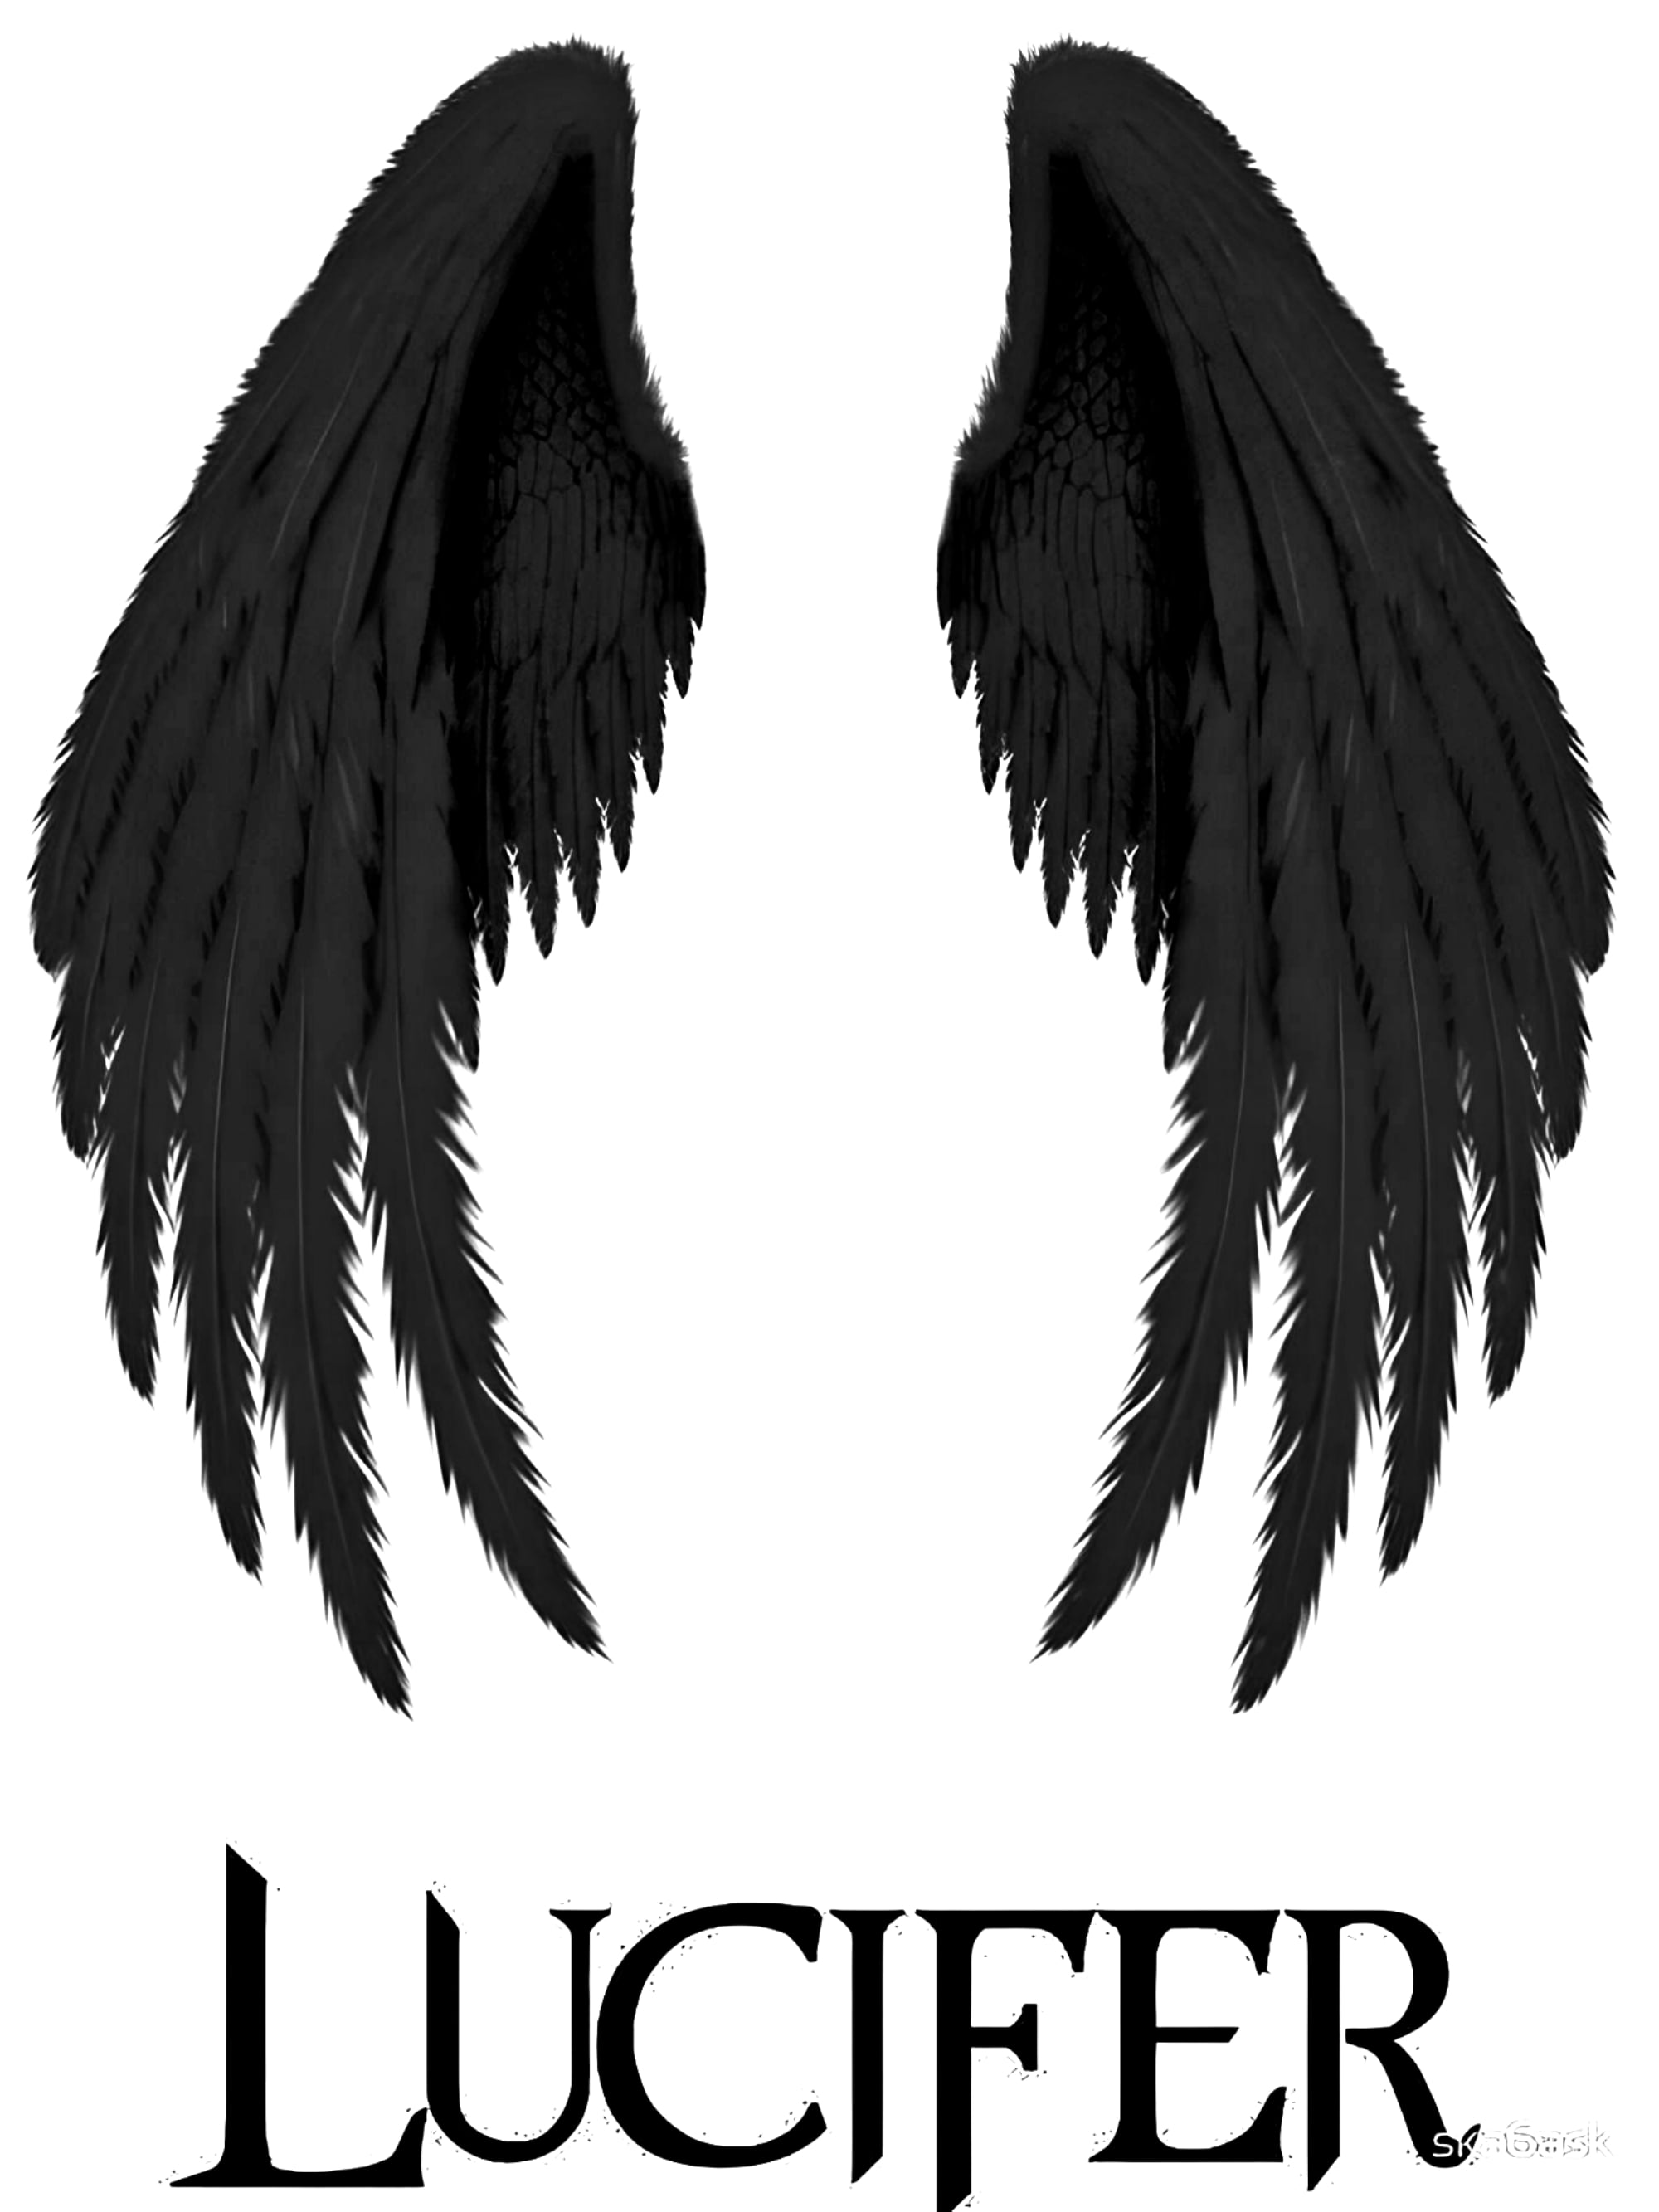 Wallpaper game Angel Lucifer images for desktop section игры  download